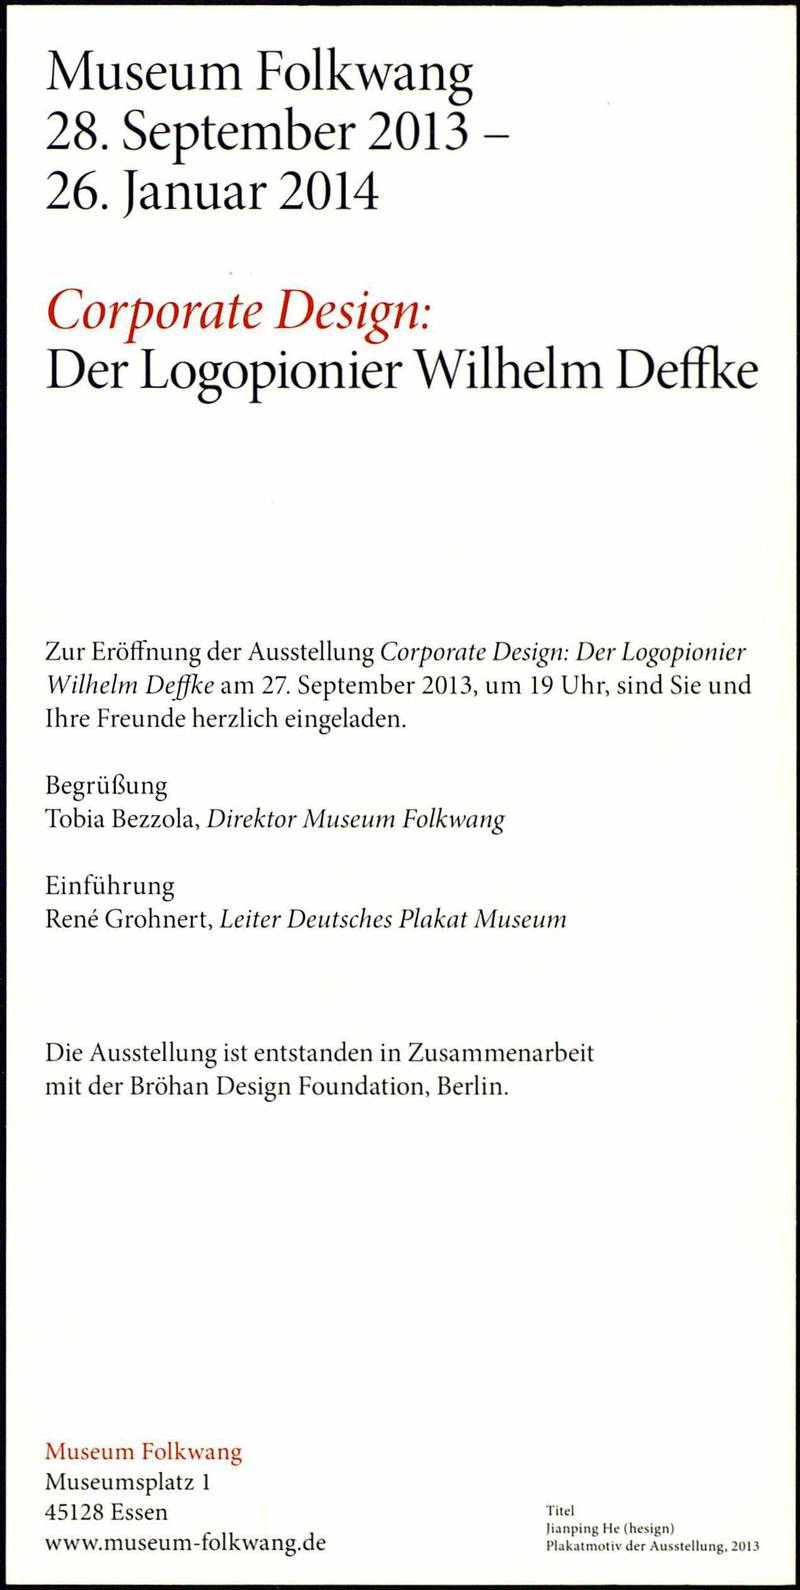 Corporate Design: Der Logopionier Wilhelm Deffke